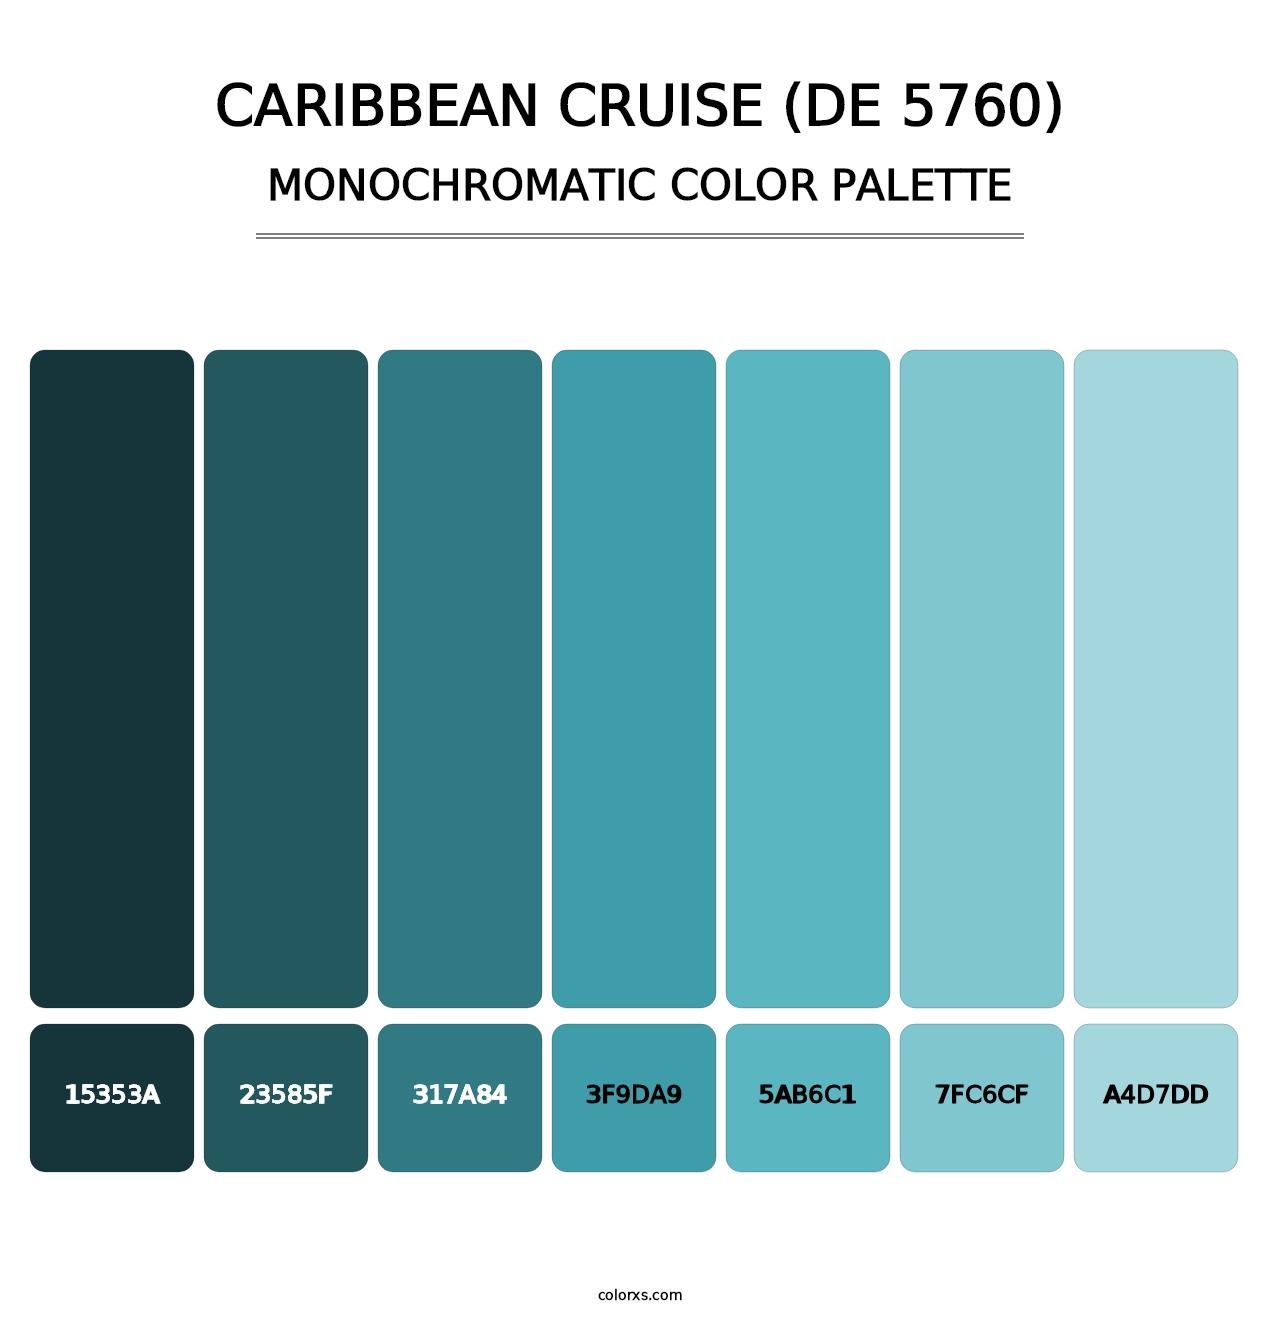 Caribbean Cruise (DE 5760) - Monochromatic Color Palette